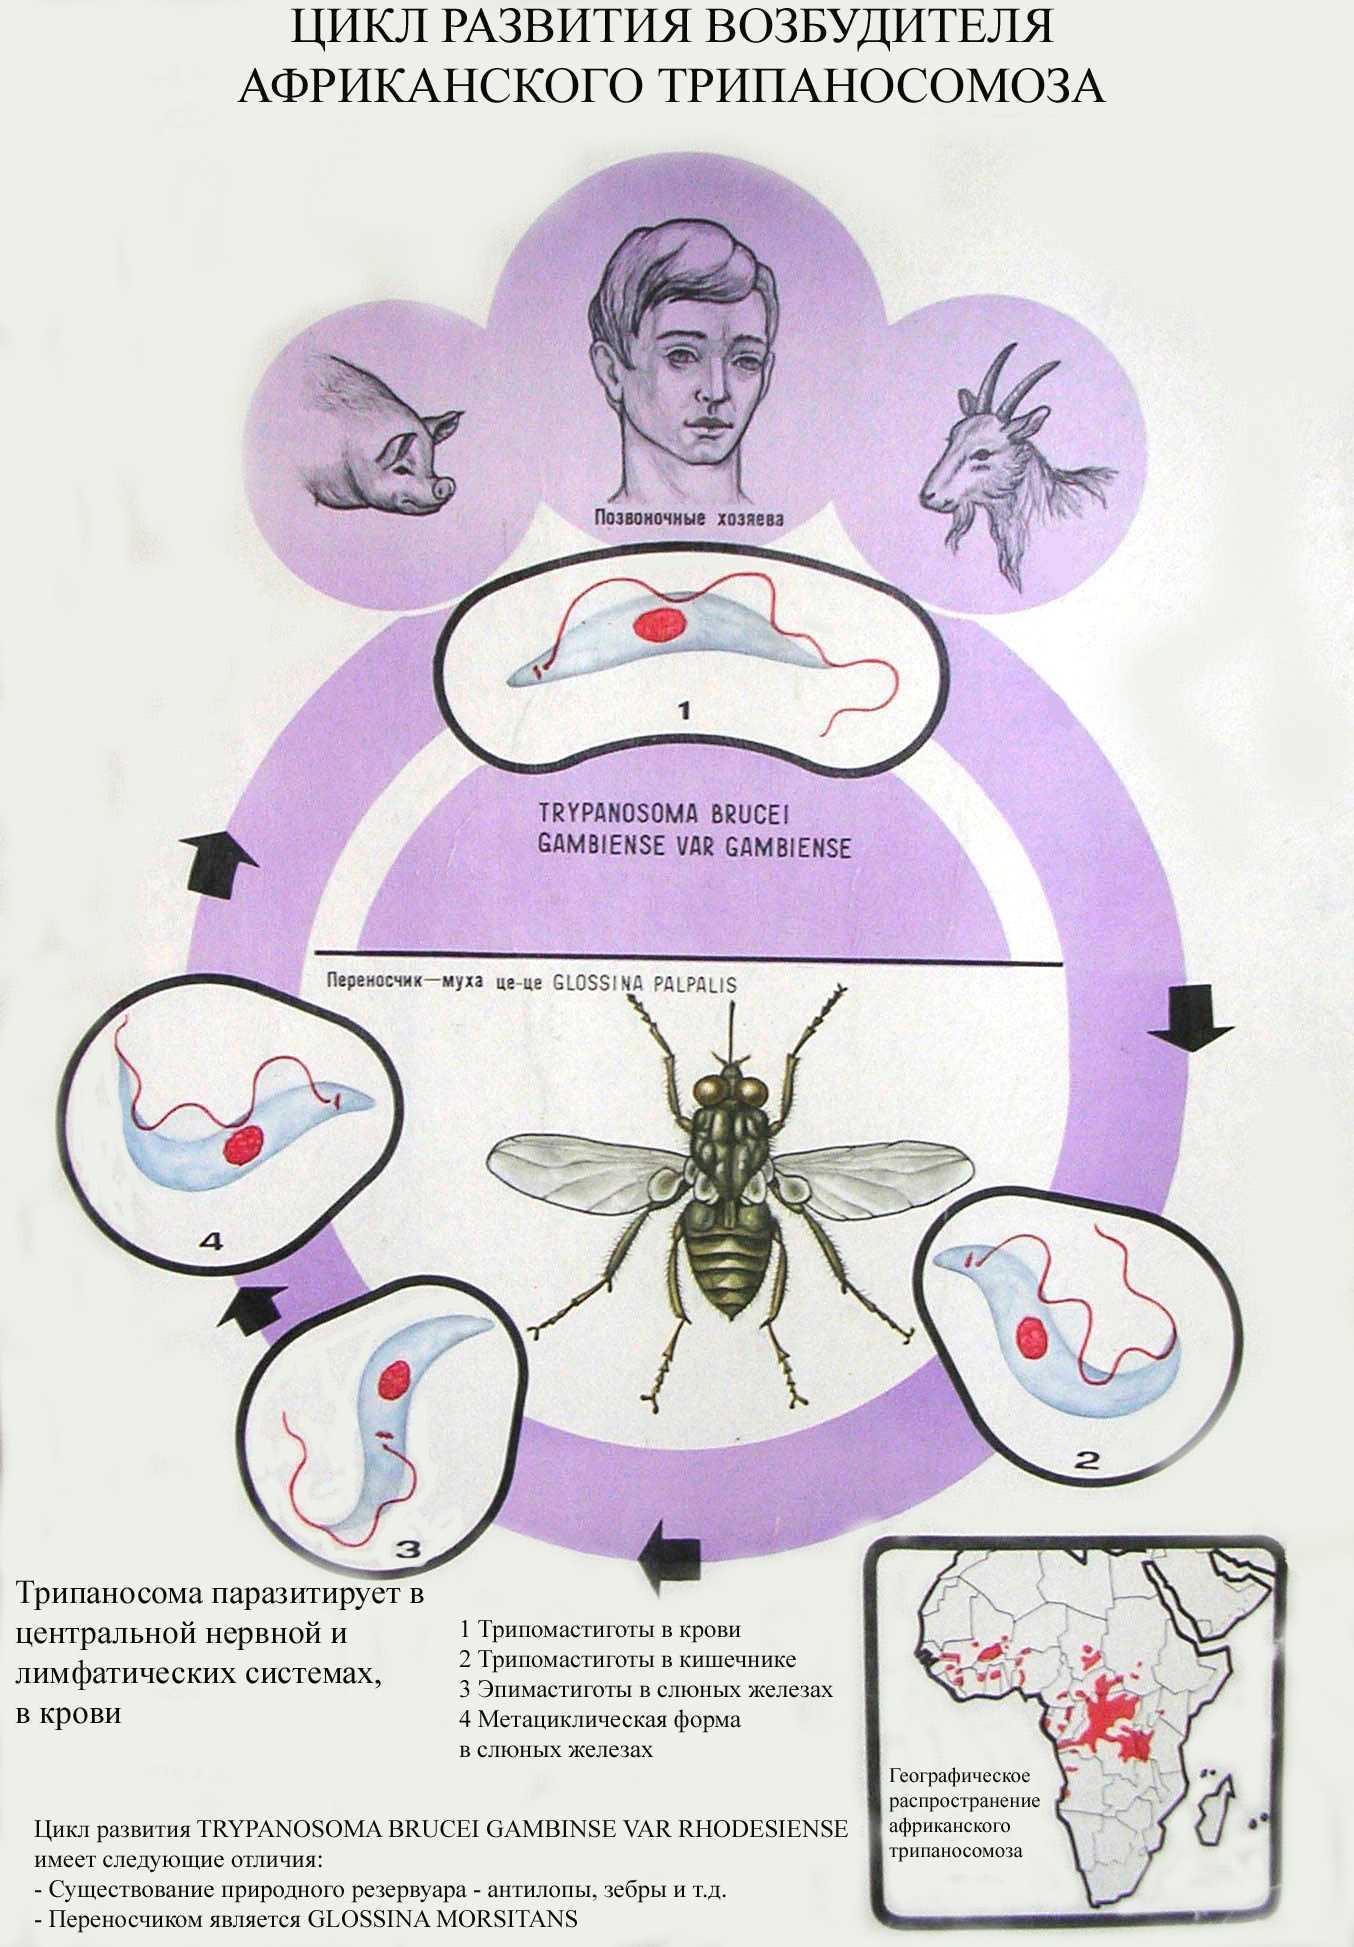 Основной хозяин муха цеце основной хозяин человек. Африканский трипаносомоз жизненный цикл. Цикл развития африканского трипаносомоза. Трипаносомоз жизненный цикл. Цикл развития возбудителя трипаносомоза.